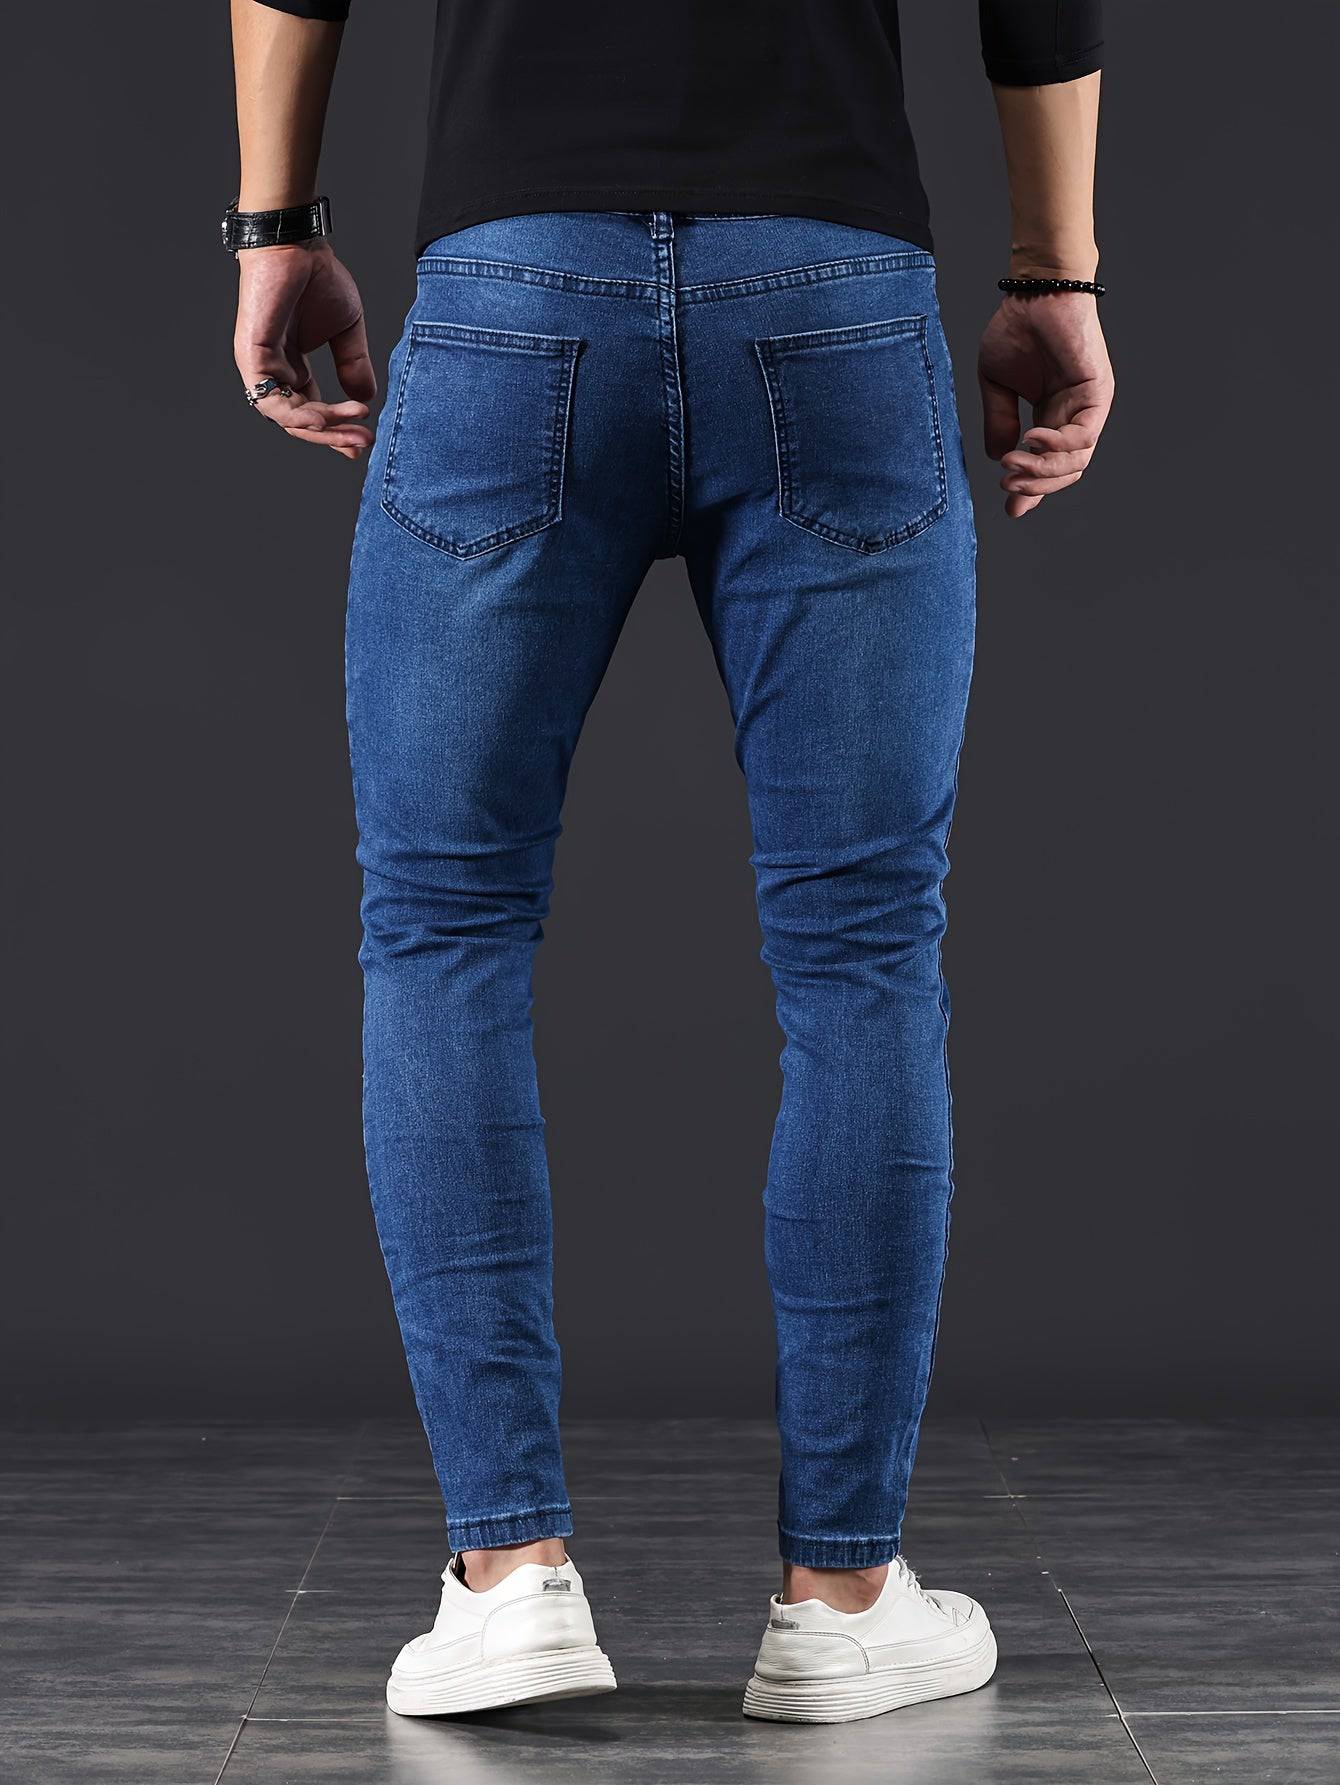 Moderne Herren-Skinny-Jeans mit flexibler Passform und Streetstyle